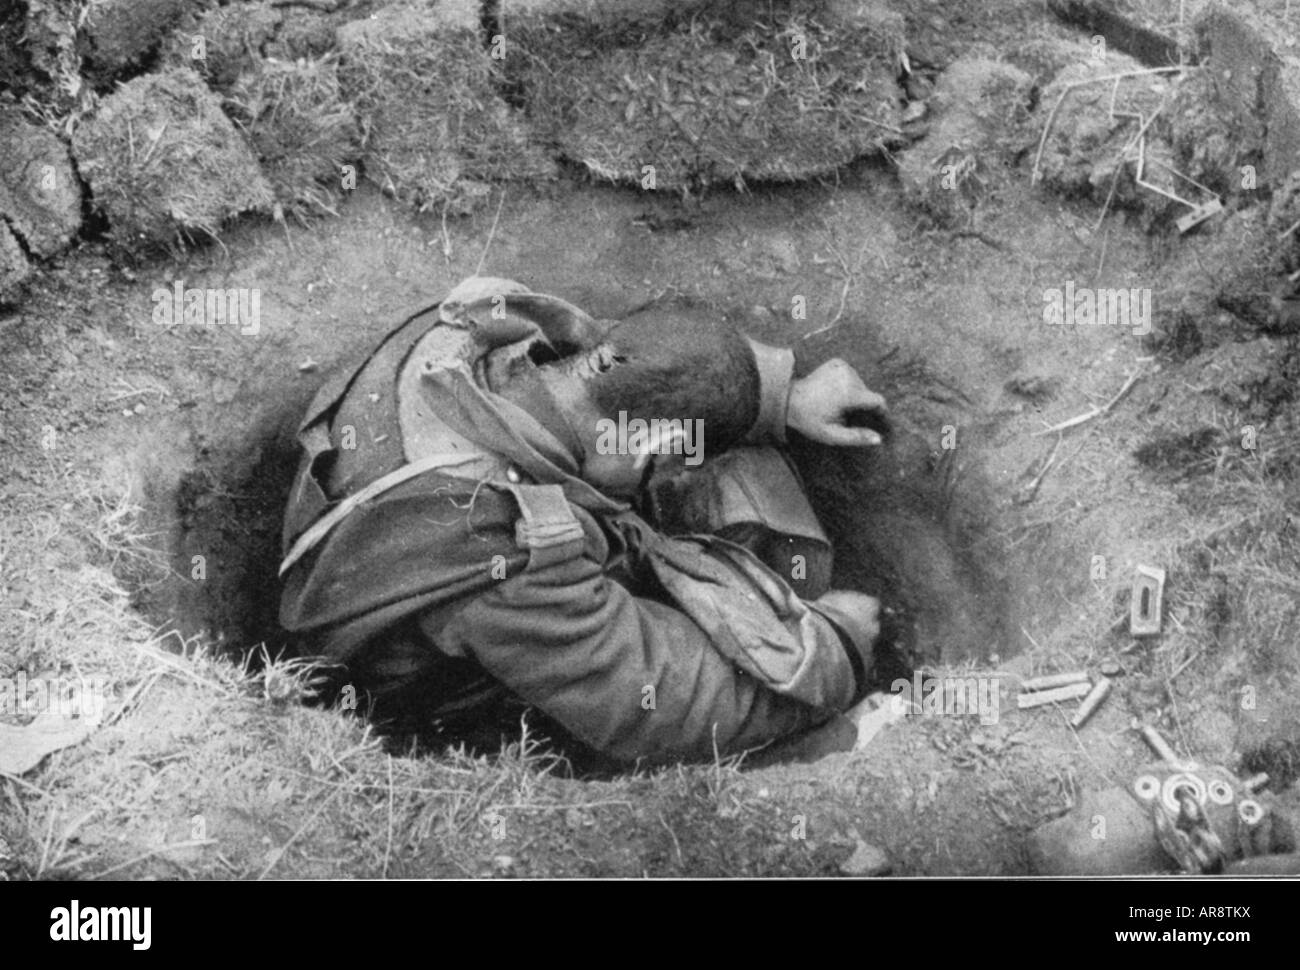 Veranstaltungen, Erster Weltkrieg/erster Weltkrieg, Balkanfront, Rumänien, totgekommender rumänischer Soldat in Foxhole, 1916, Stockfoto